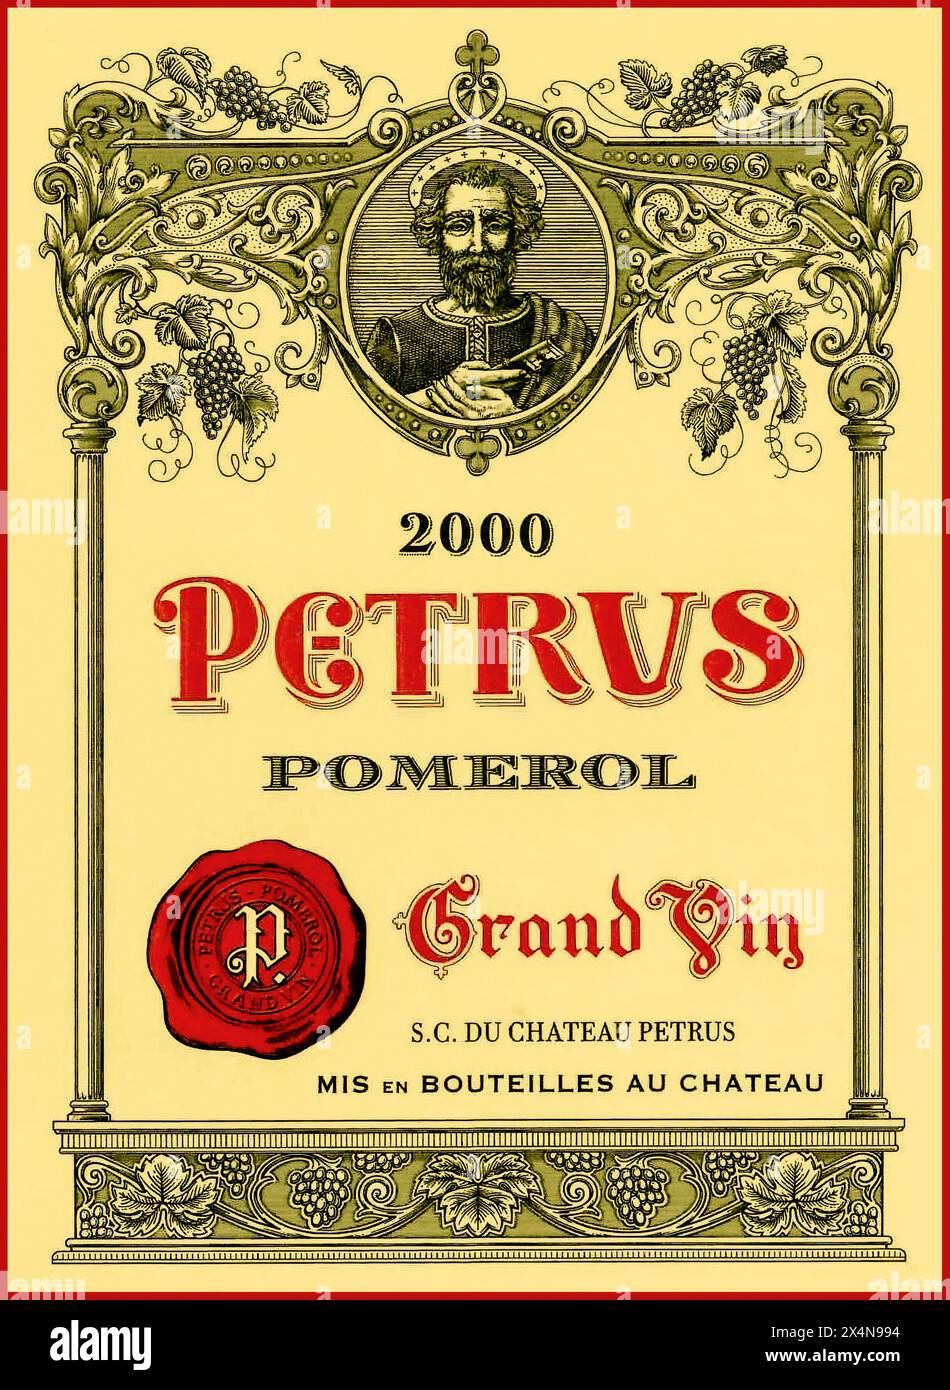 CHATEAU PETRUS bouteille étiquette de récolte exceptionnelle année 2000 Chateau Petrus Pomerol Grand vin rouge Bordeaux France Banque D'Images